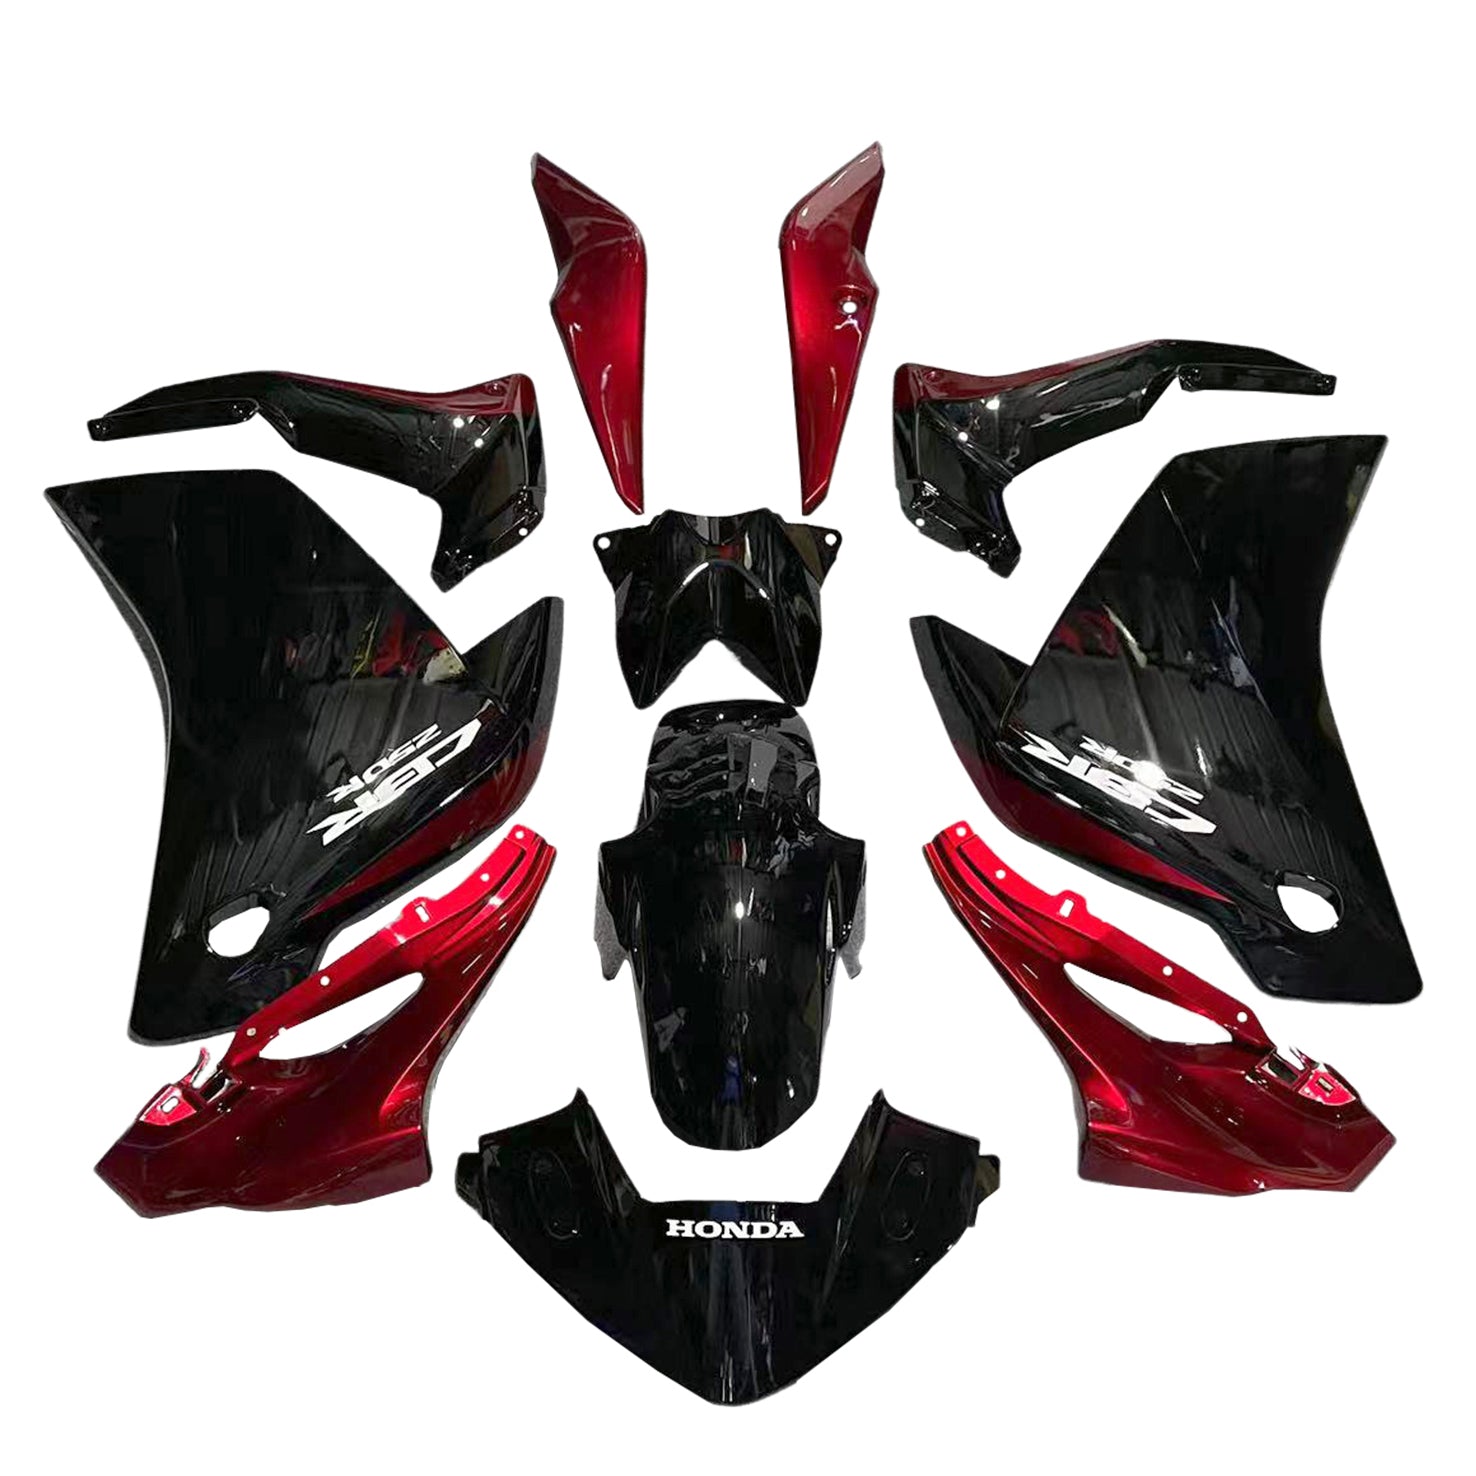 Amotopart Verkleidungssatz für Honda CBR250R 2011-2015, glänzend schwarz und rot